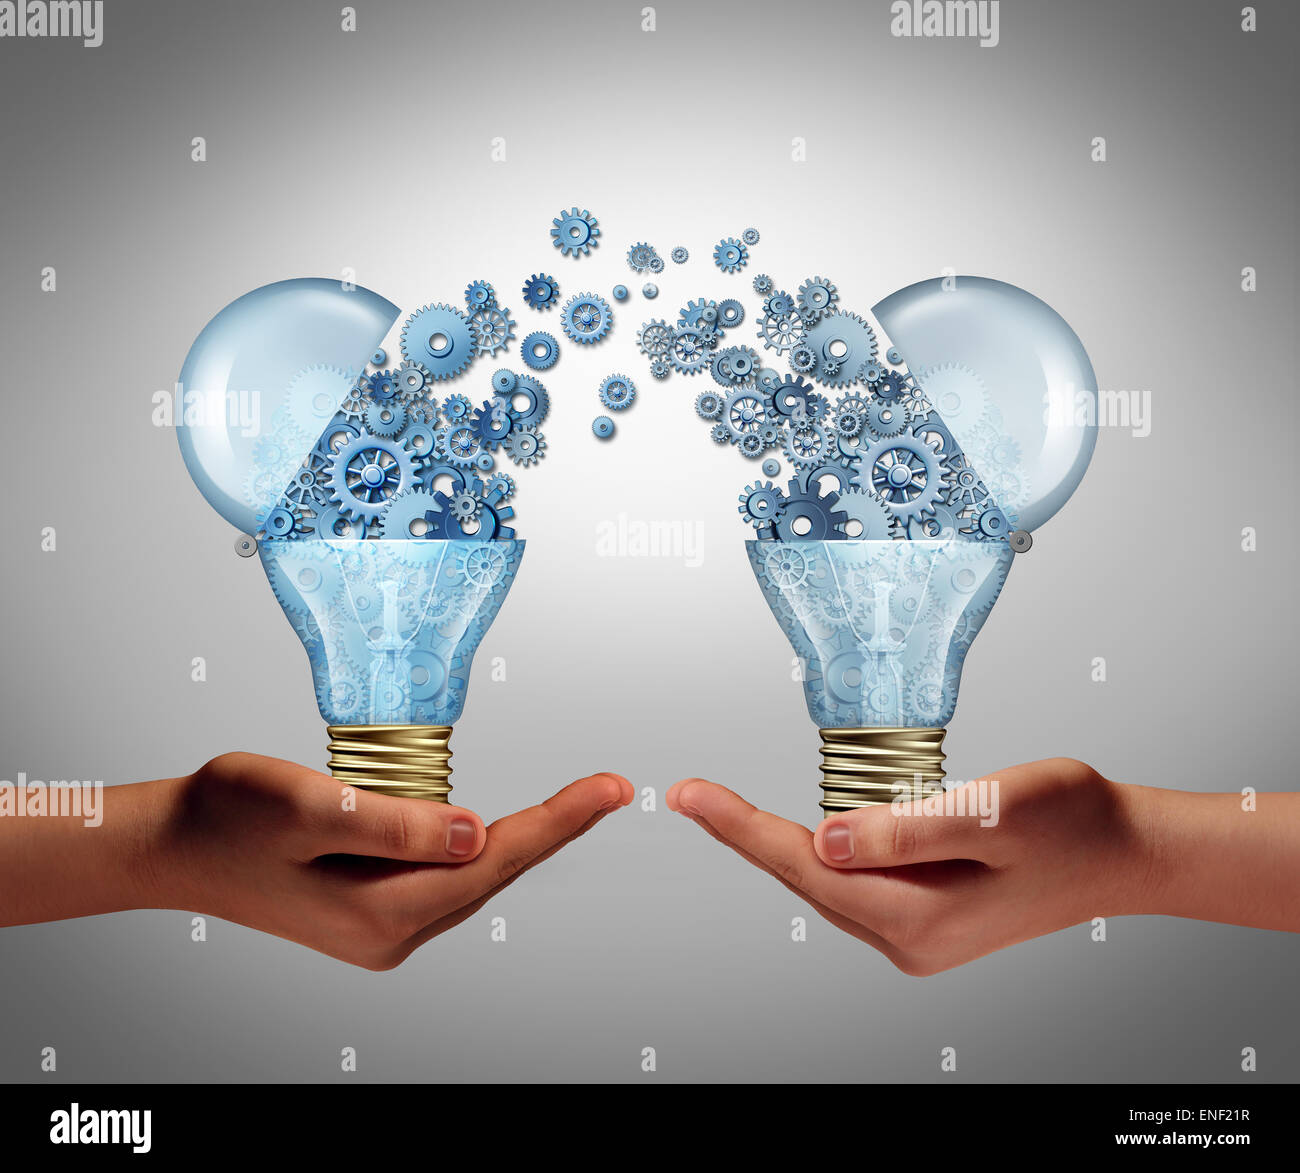 Ideen-Vereinbarung in Business Innovation-Konzept und finanzielle Unterstützung der Kreativität als offene Glühbirne Symbol für potenzielle innovative Wachstum Perspektive durch Venture Capital Finanzierung Handel investieren. Stockfoto